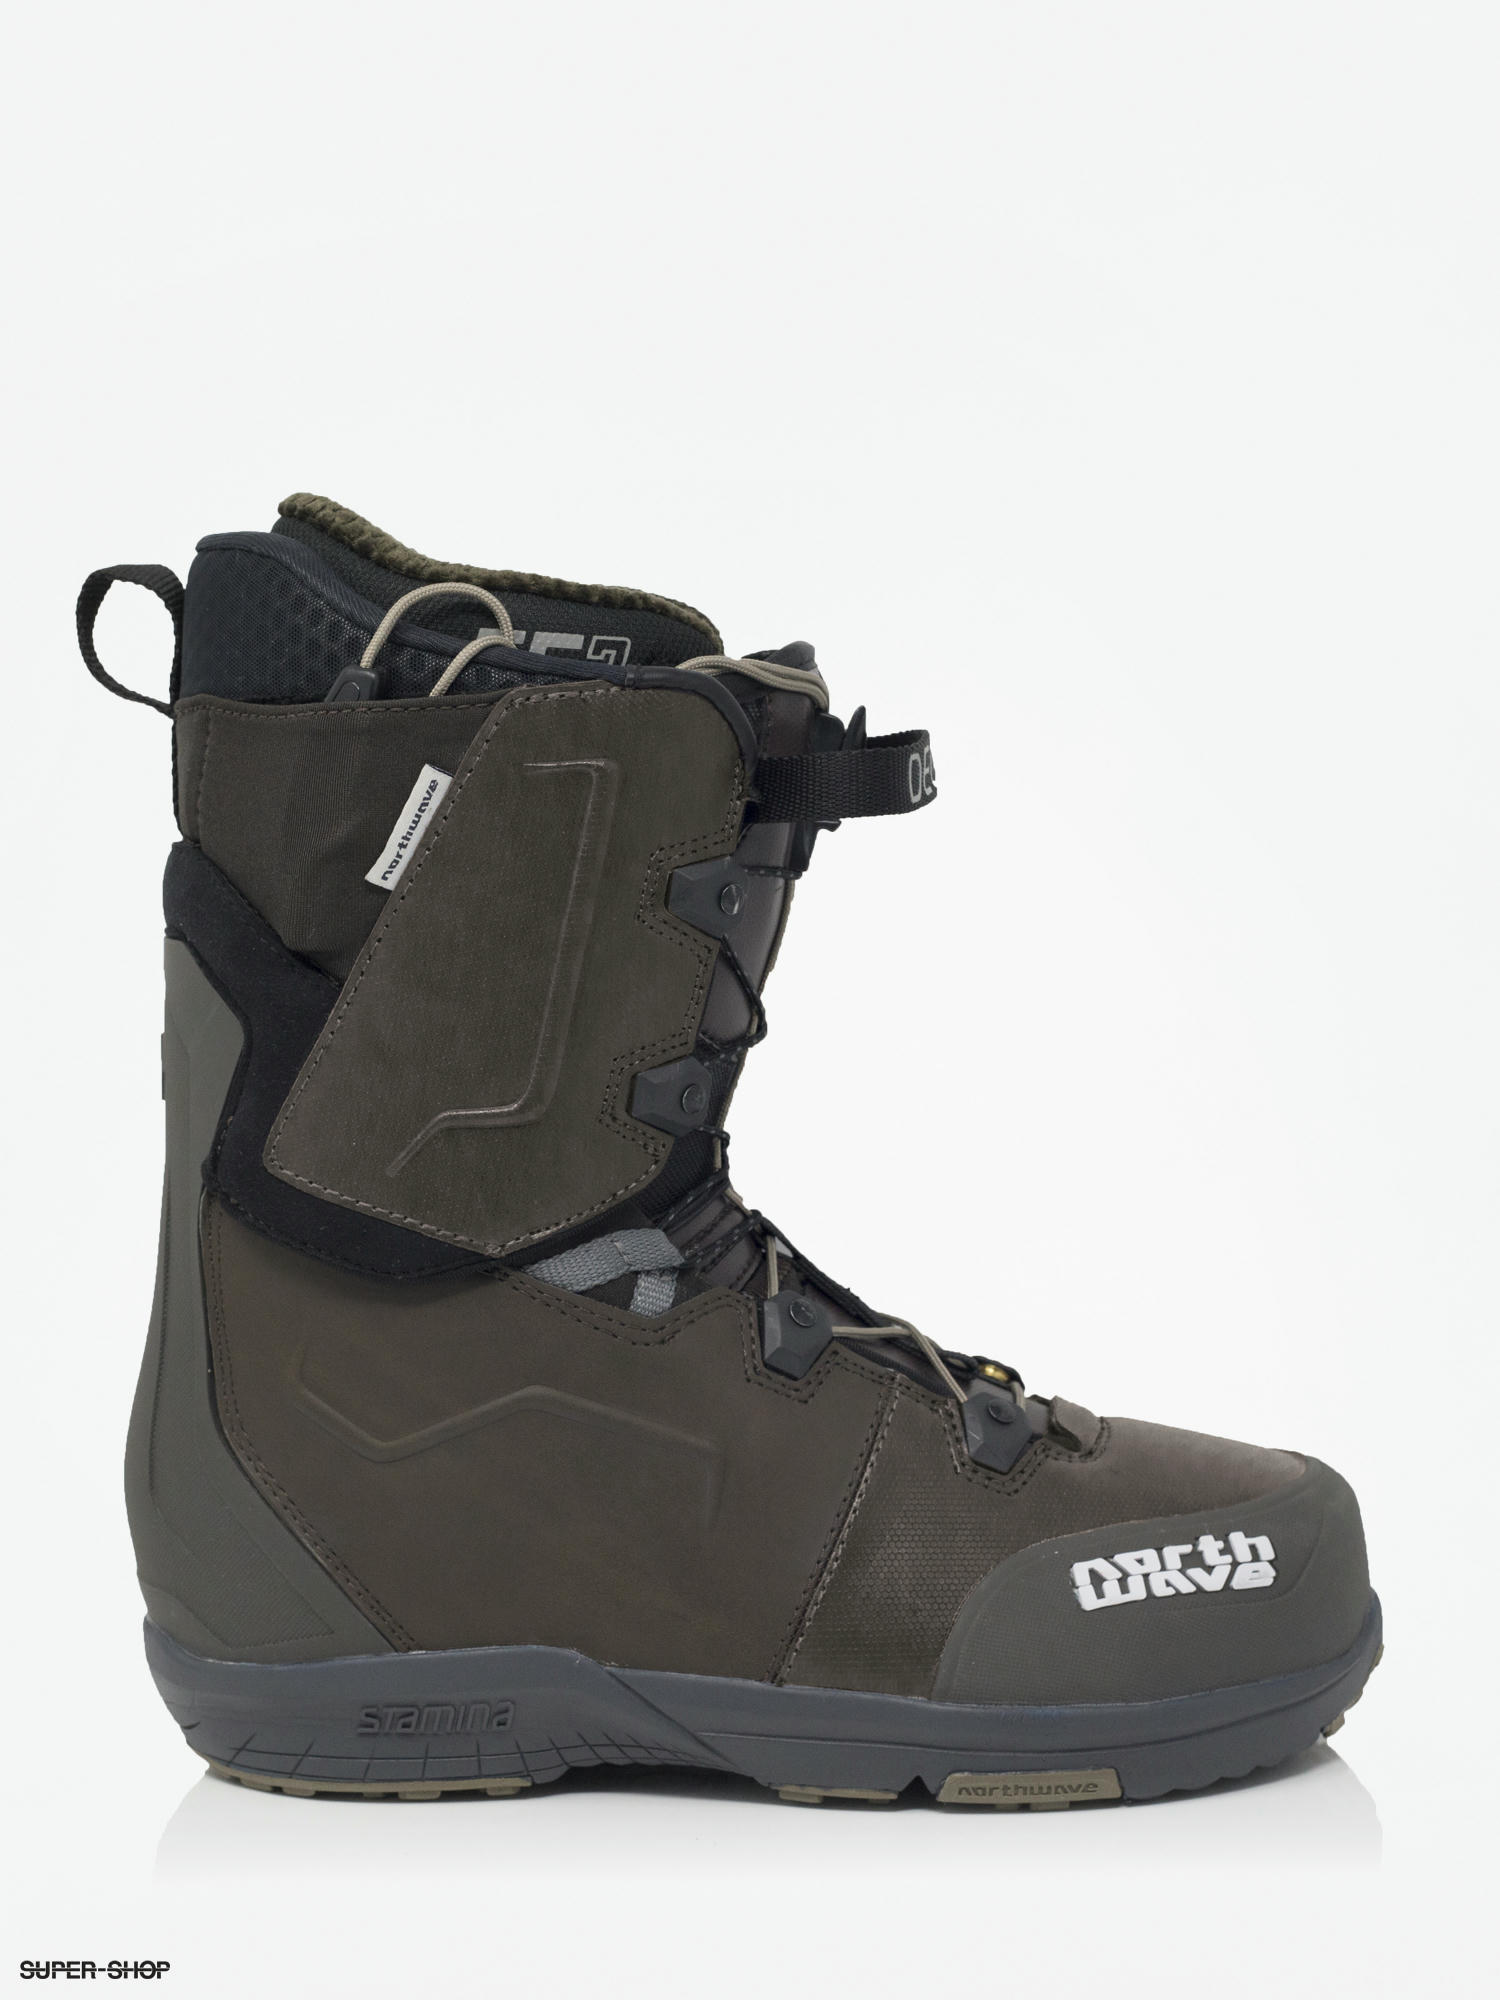 Northwave Decade Sl Snowboard boots (brown)